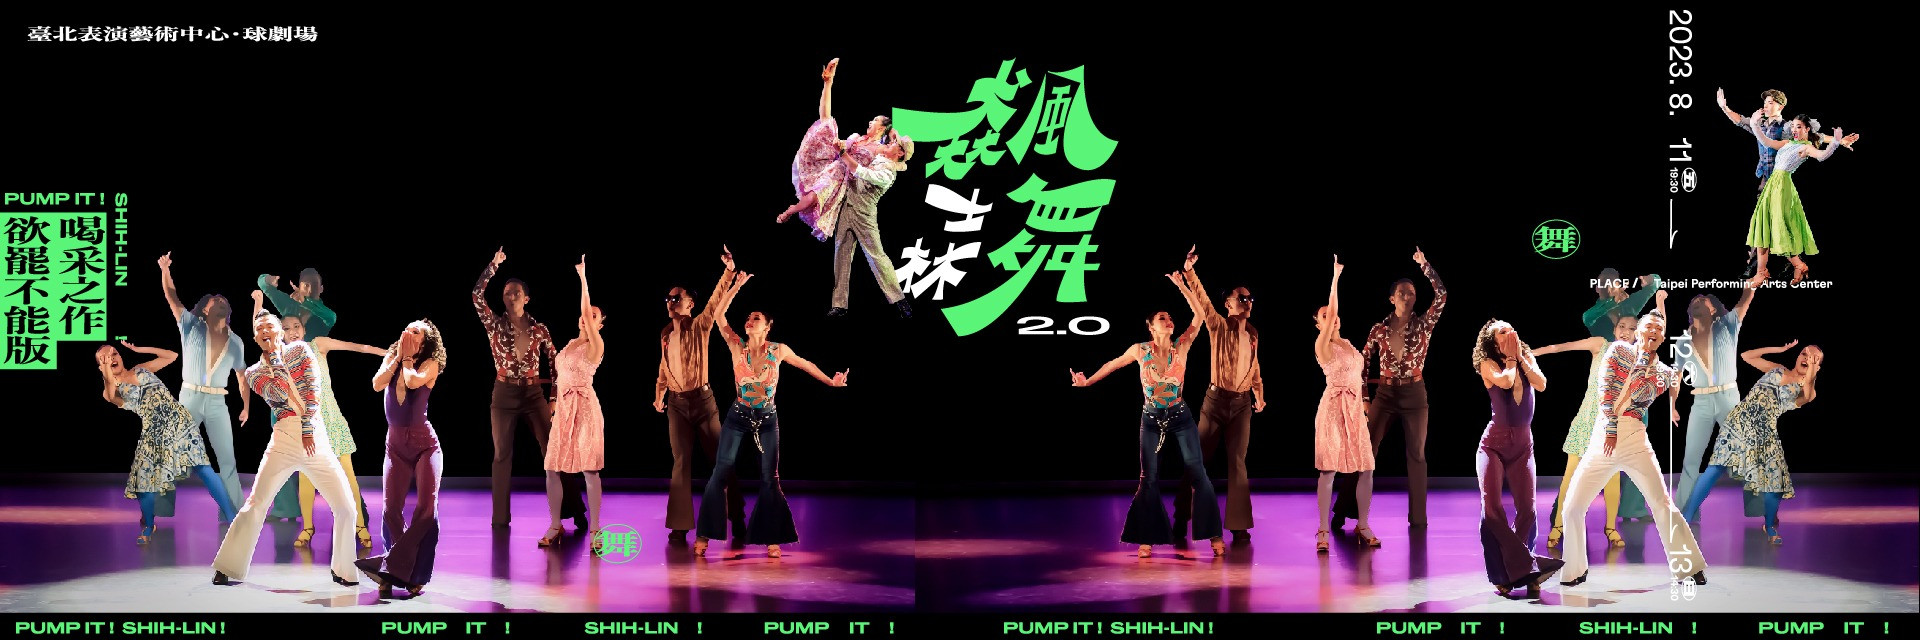 臺北表演藝術中心 X i5dance《飆舞士林2.0》喝采之作欲罷不能版 主要圖片